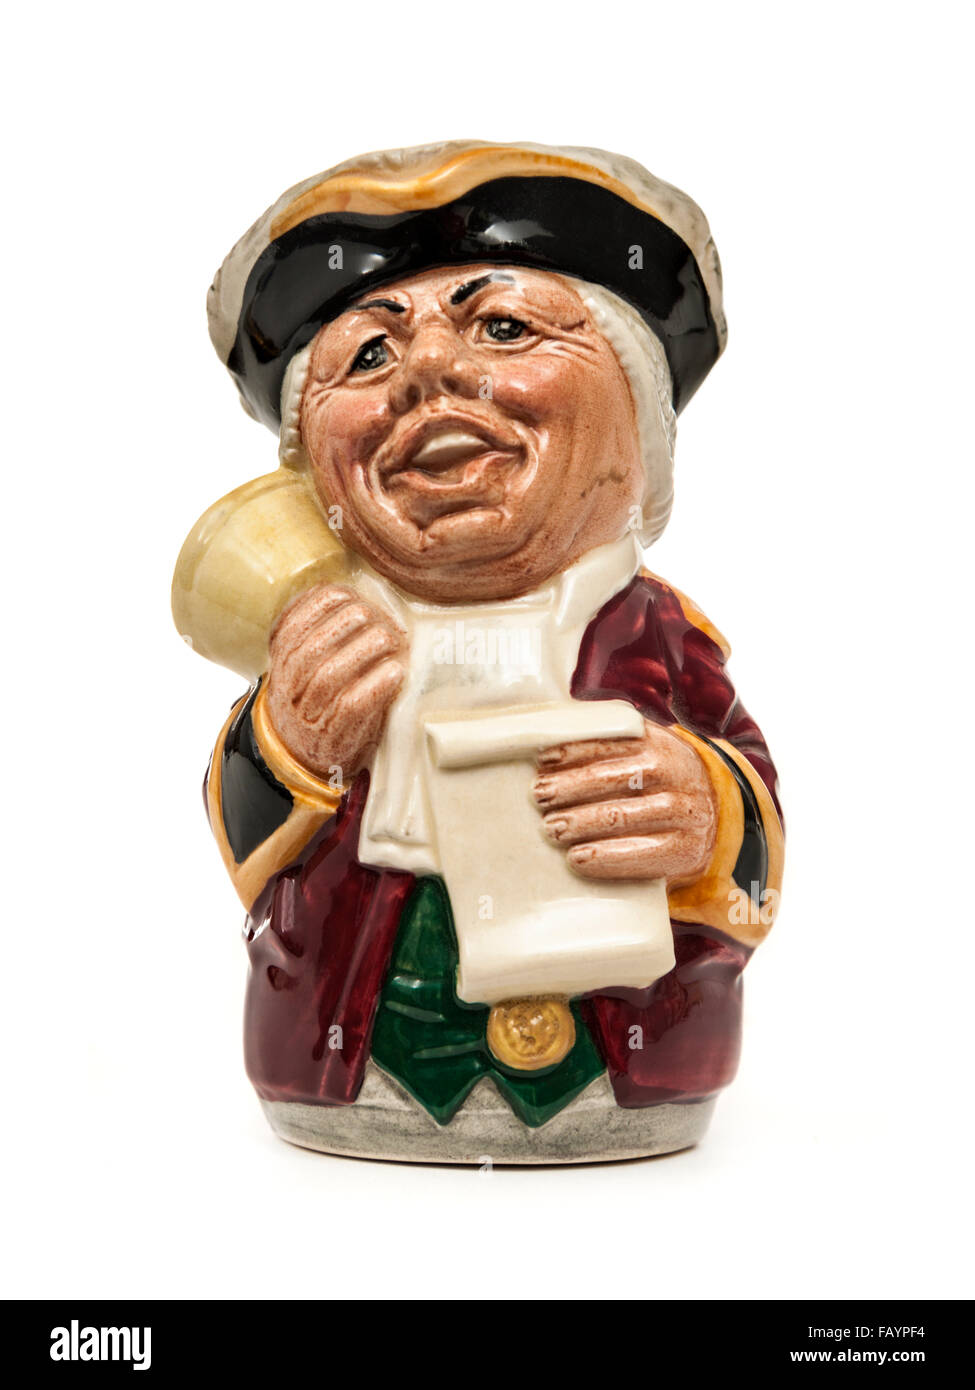 Vintage Toby carácter / jarra (D6713) 'Mr las amígdalas, el Pregonero' de Royal Doulton. Diseñado por William K. Harper. Foto de stock